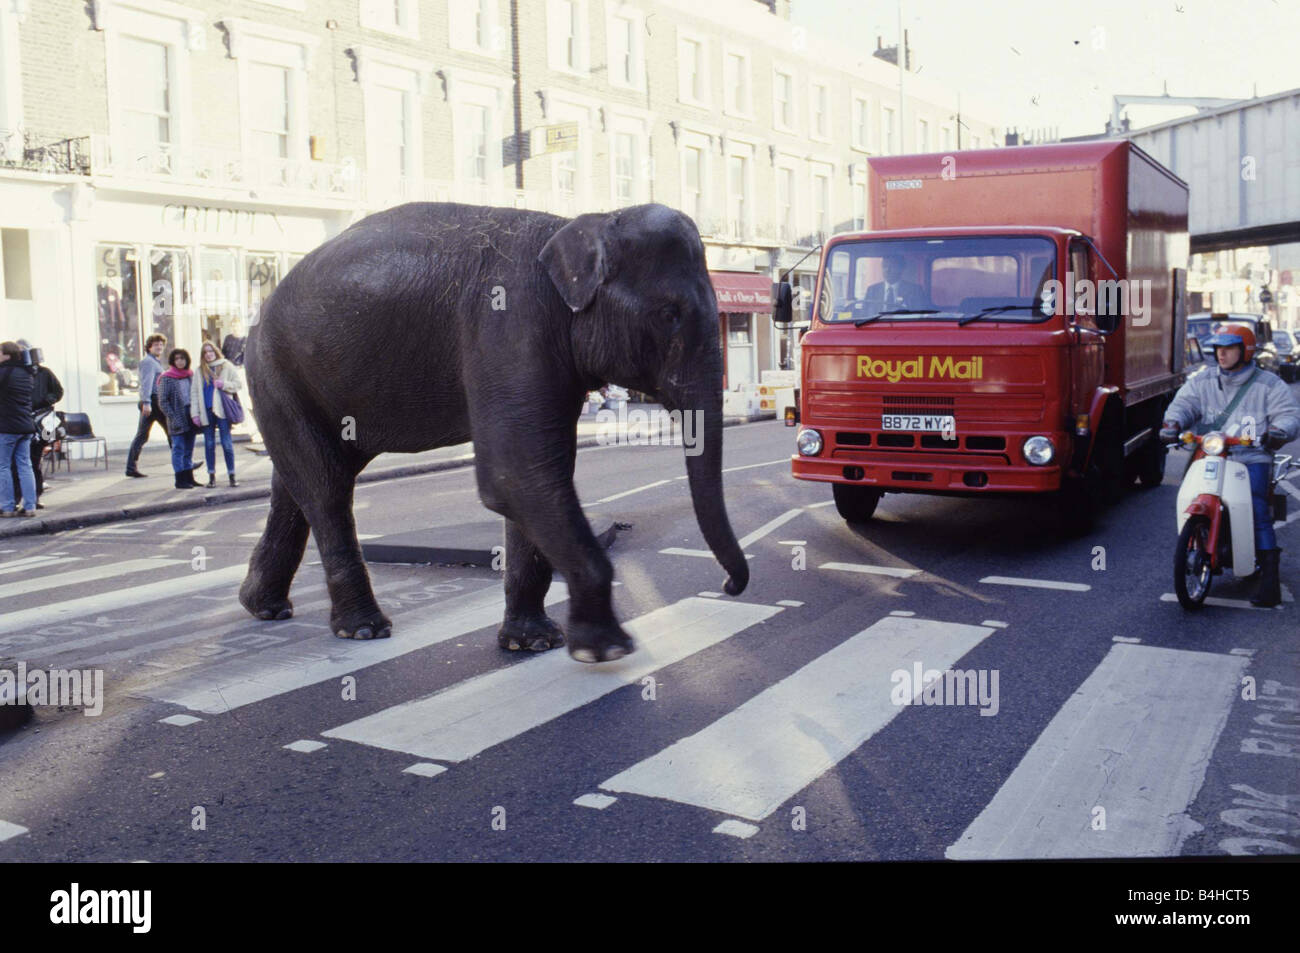 Gerry Cottle s Circus am Camden Lock in London Rani der indische Elefant beim Überqueren der Straße Dezember 1985 Zebrastreifen Verkehr ungewöhnlich Stockfoto